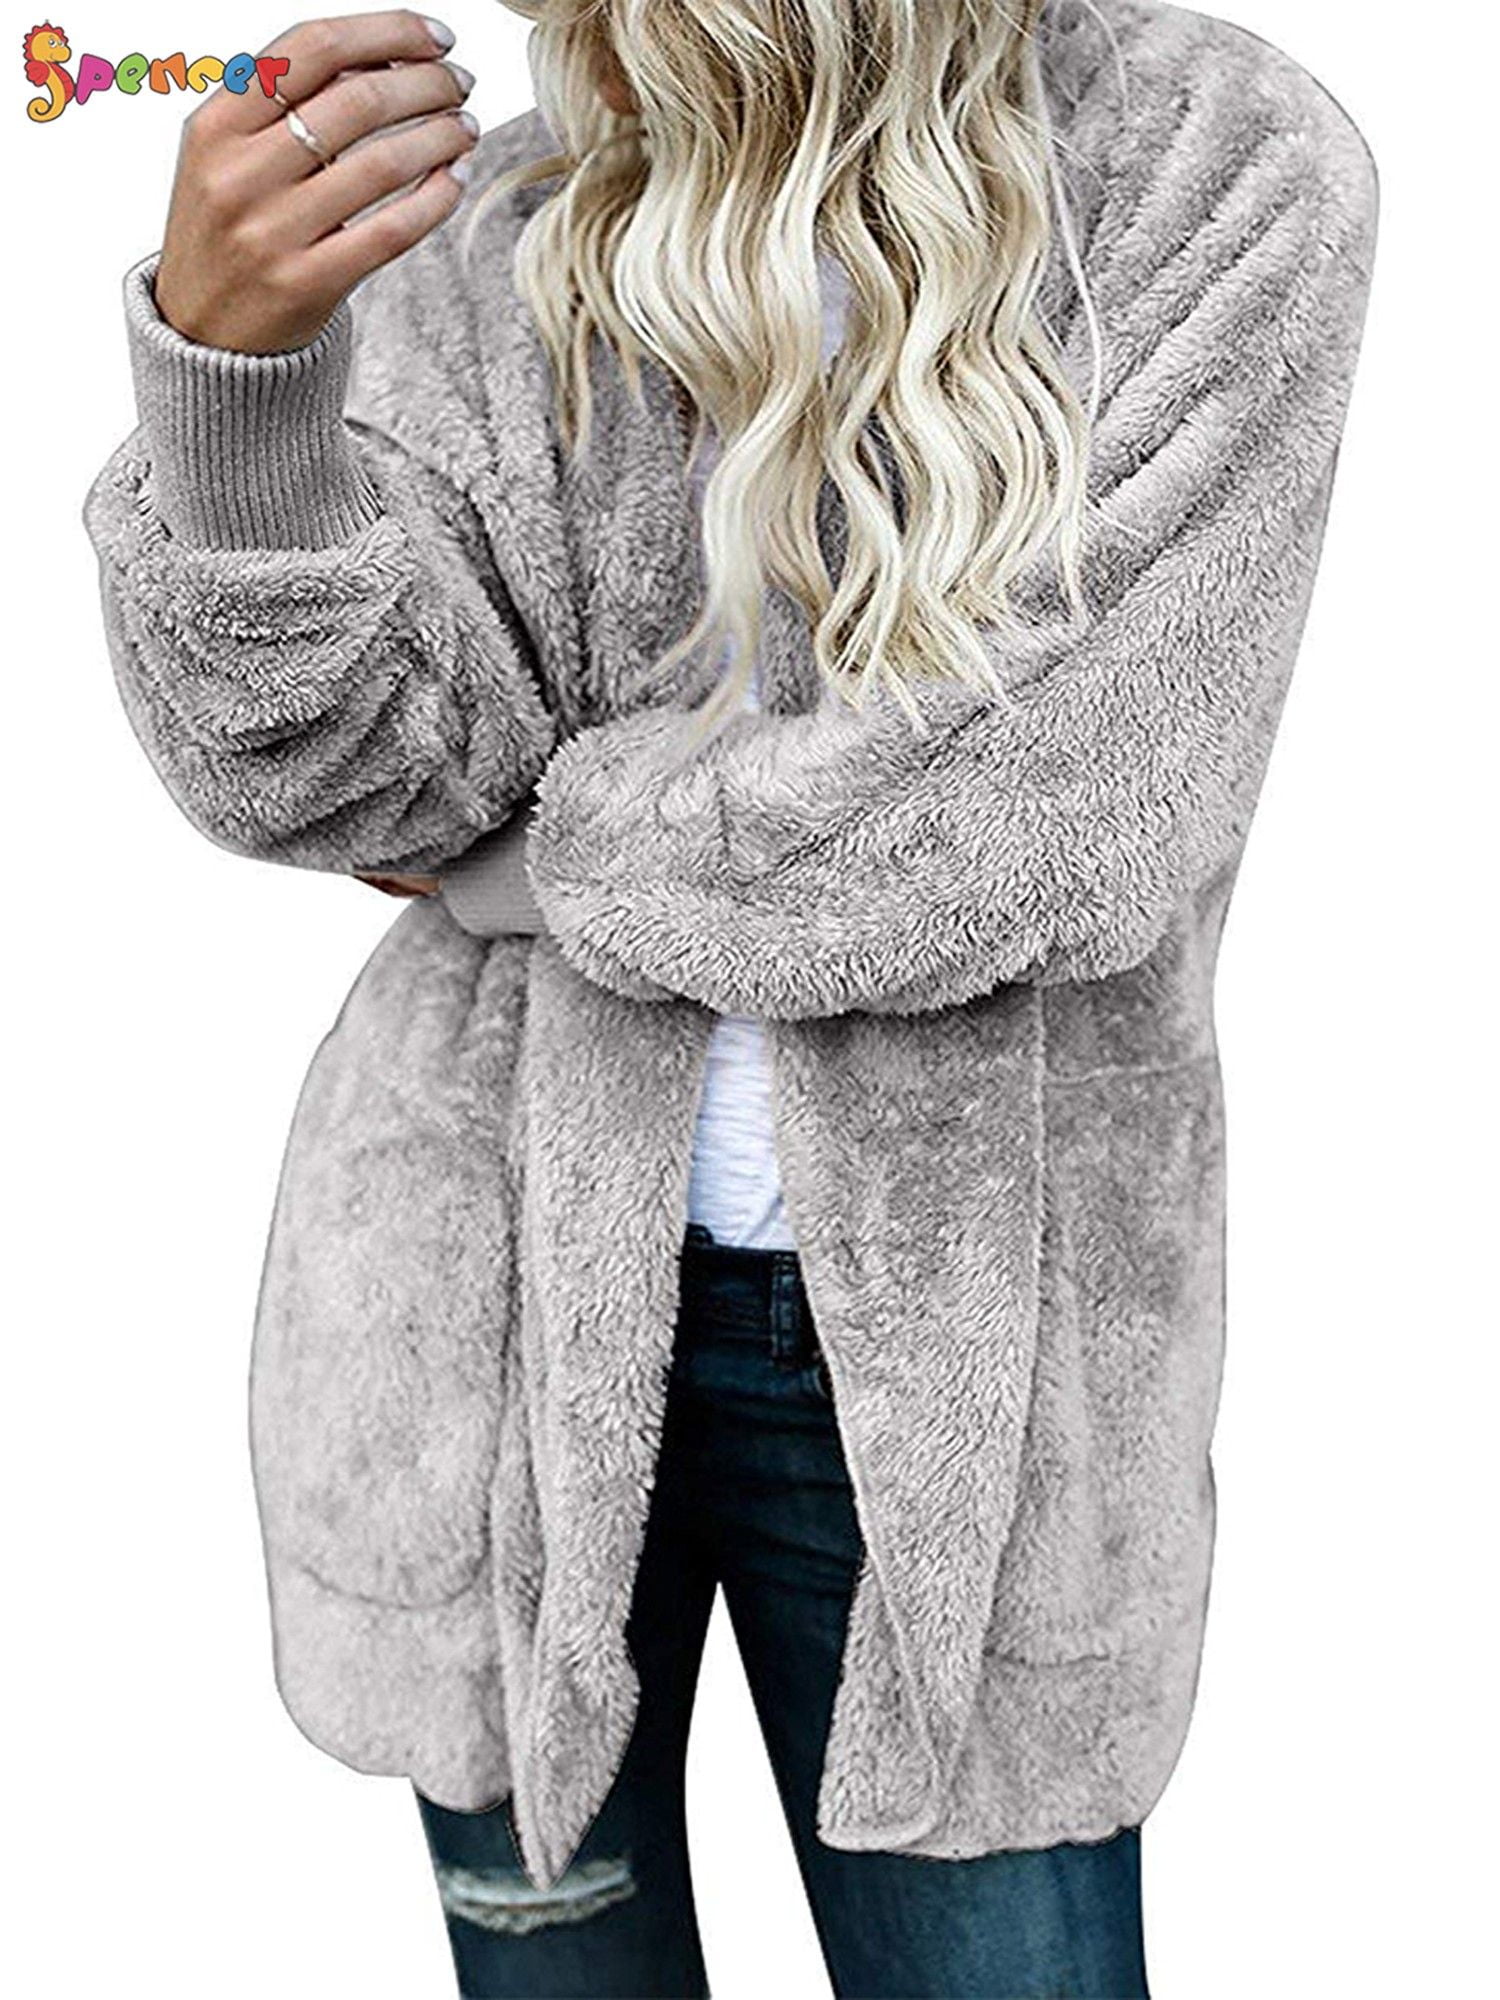 Spencer Women's Winter Fleece Fur Jacket Open Front Hooded Cardigan ...